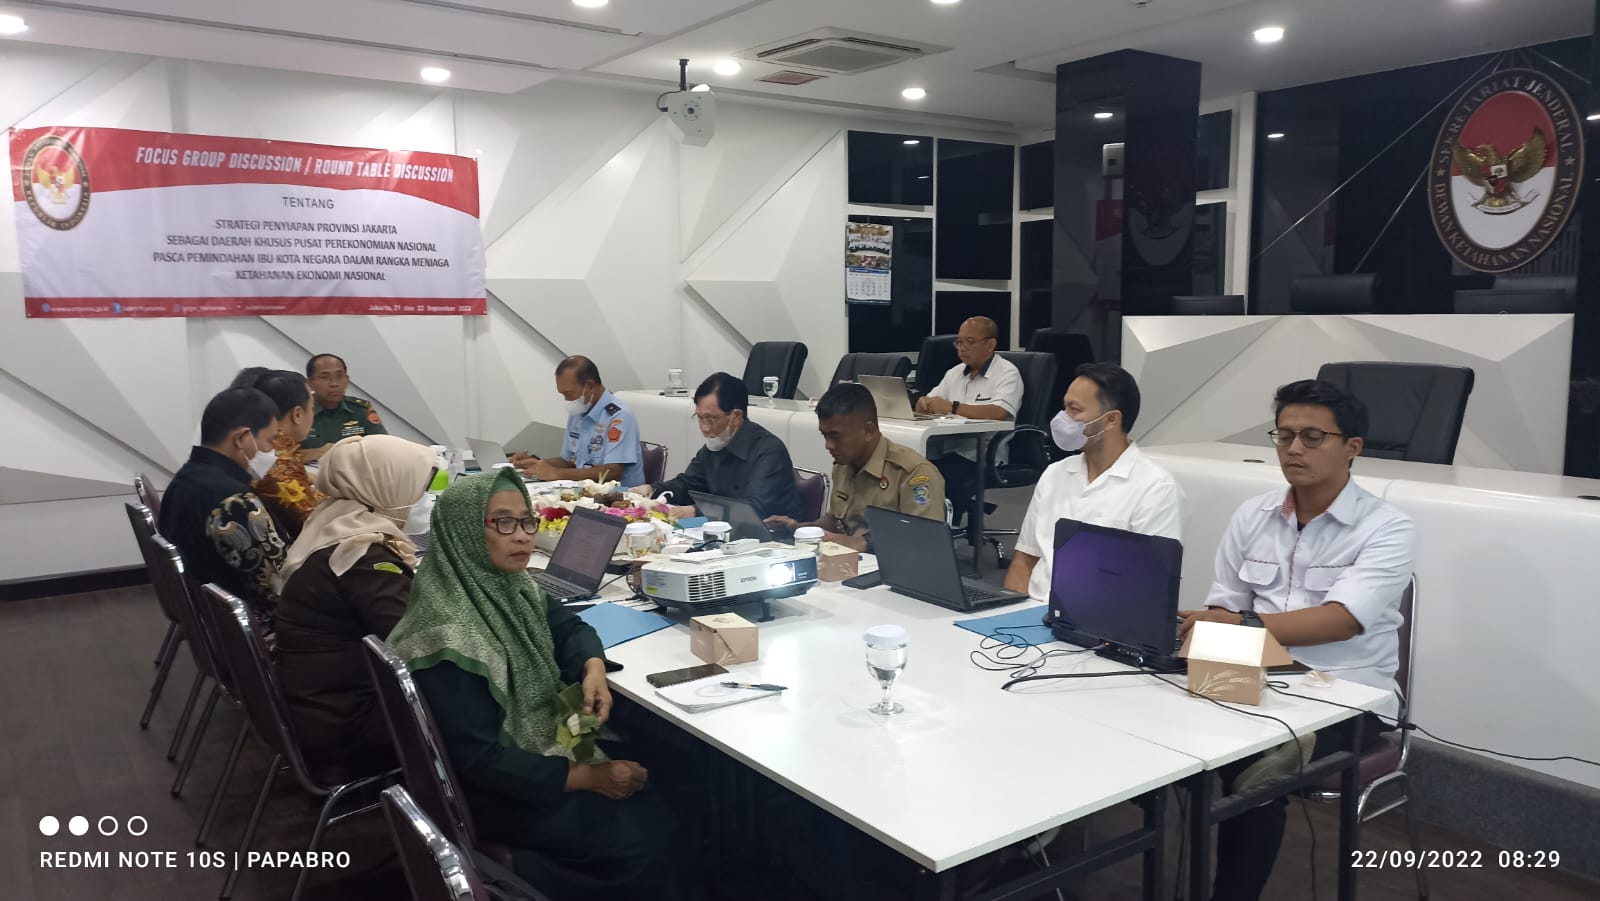 RTD Kedeputian Pengkajian & Penginderaan : Strategi Penyiapan Provinsi Jakarta Sebagai Daerah